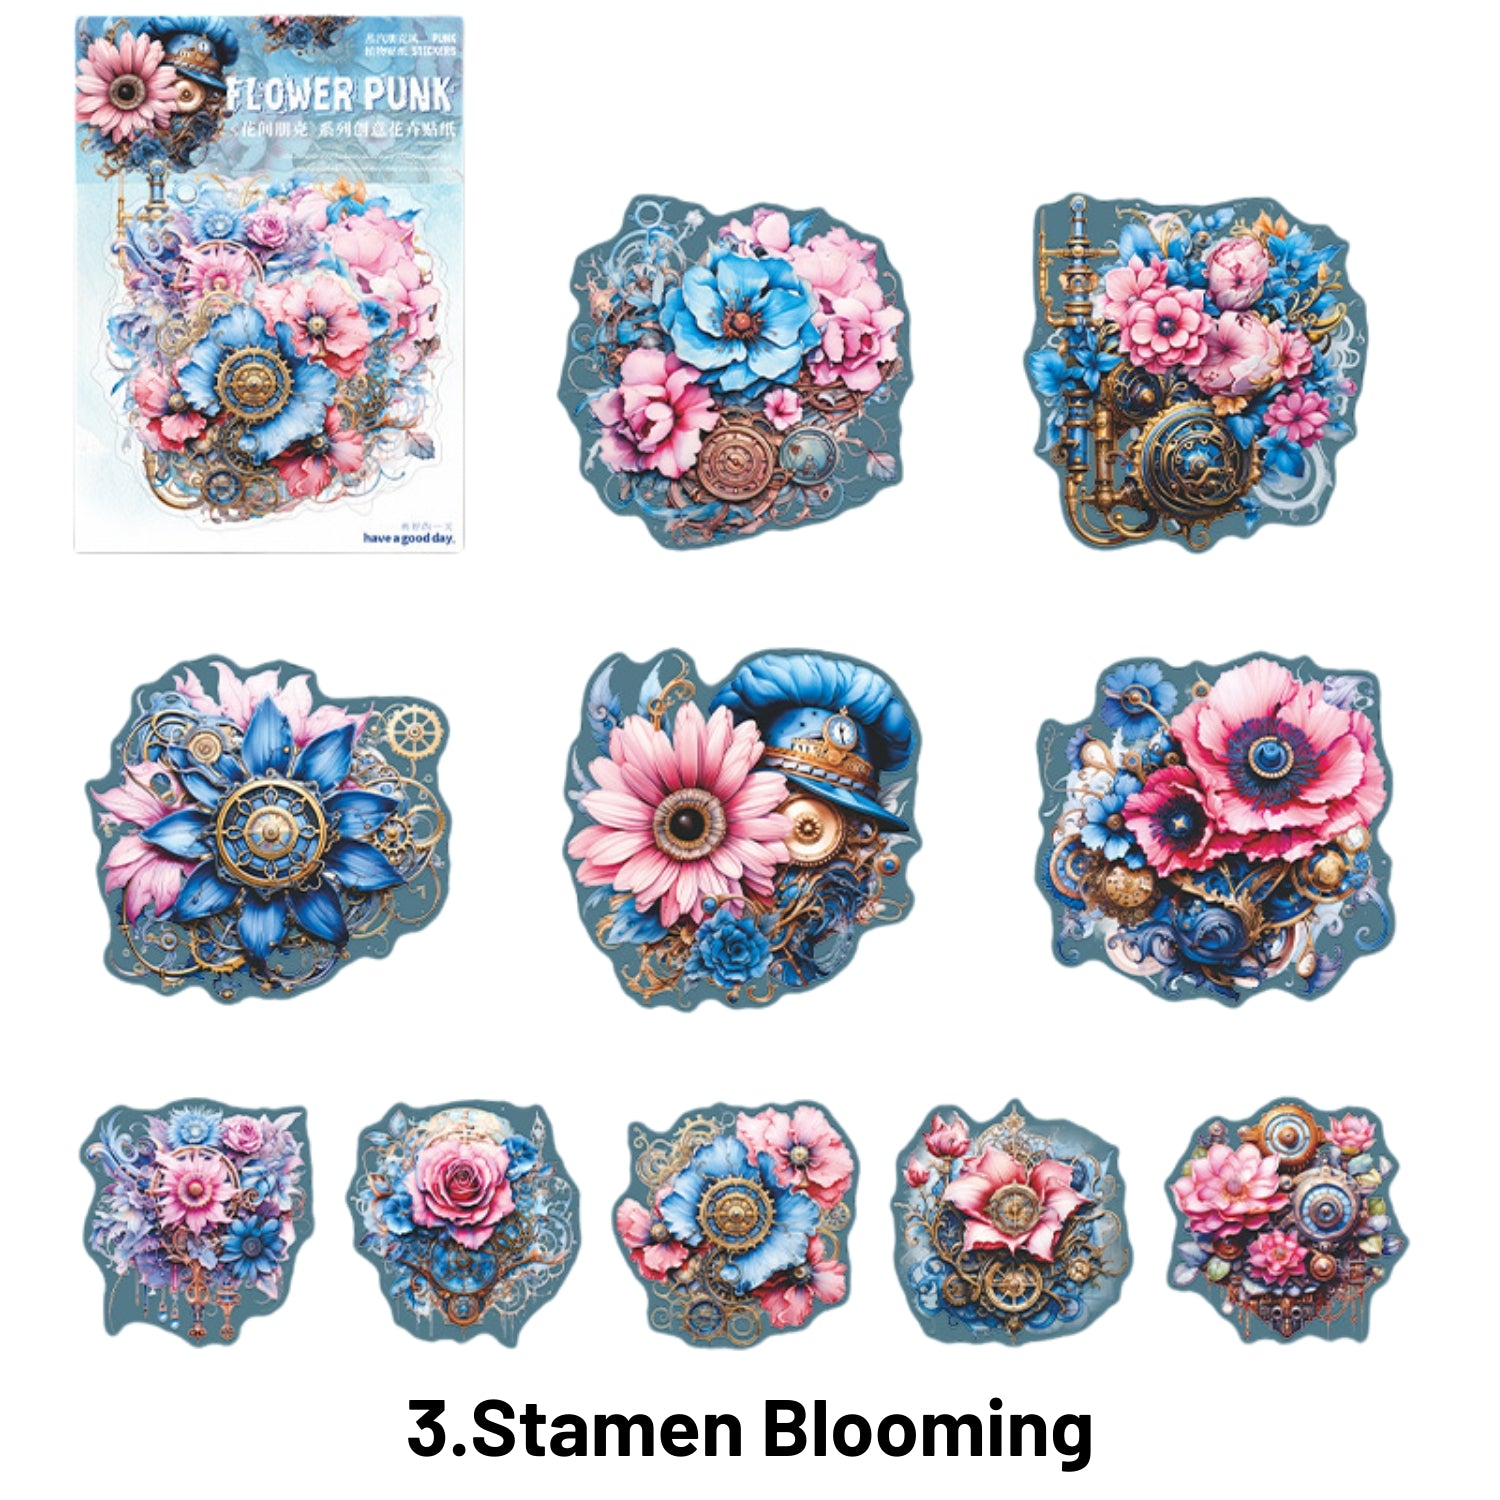 Flower Punk Series Punk Flower Wild Landscape Sticker Pack 3